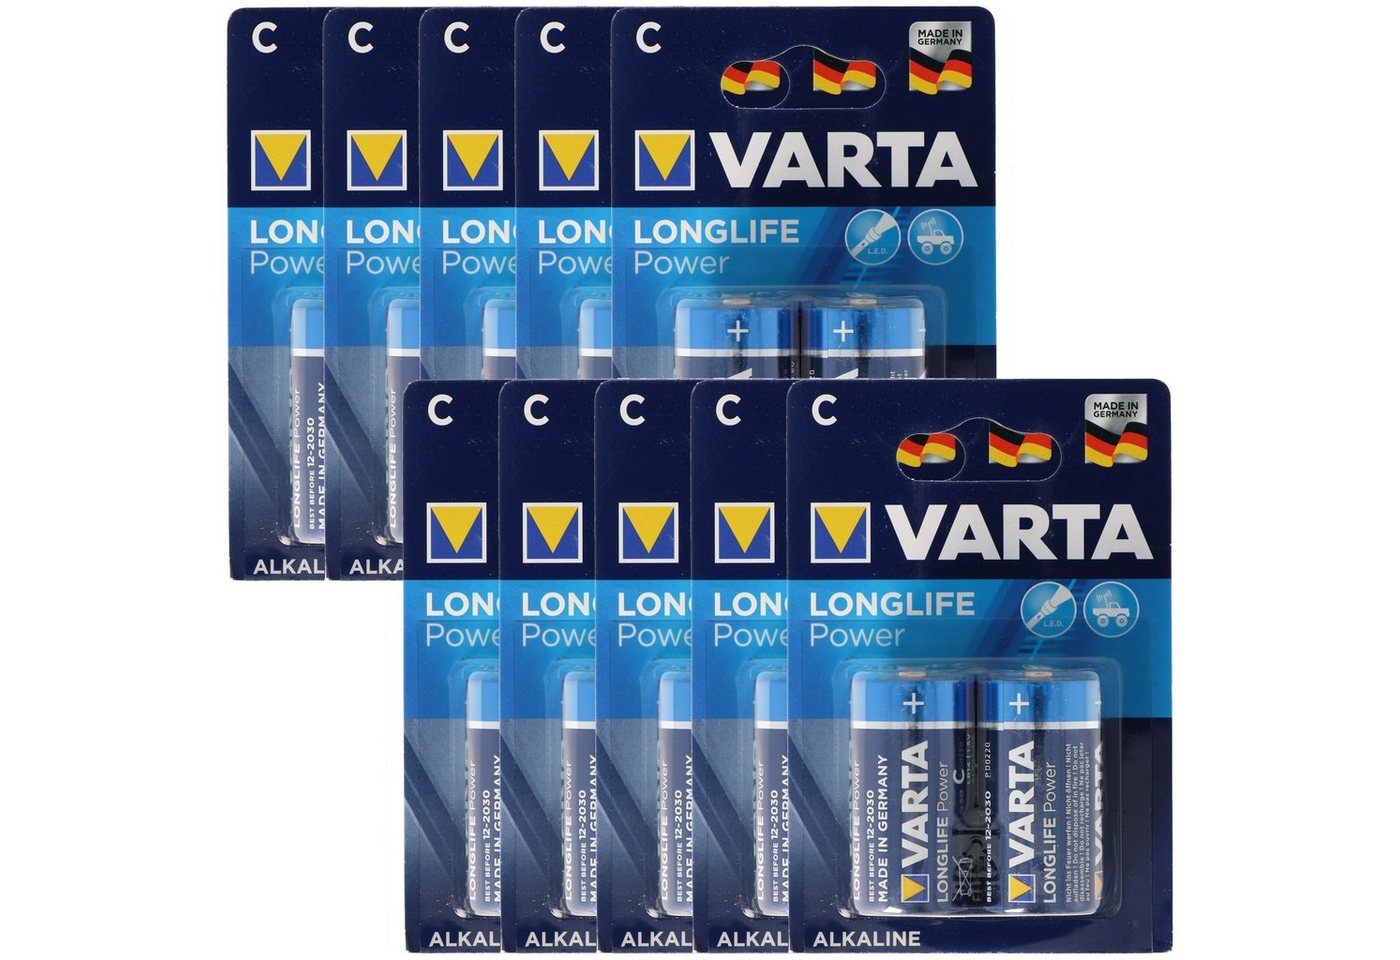 VARTA Varta Longlife Power (ehem. High Energy) Baby C Batterie 4914 10x 2er Batterie, (1,5 V) von VARTA